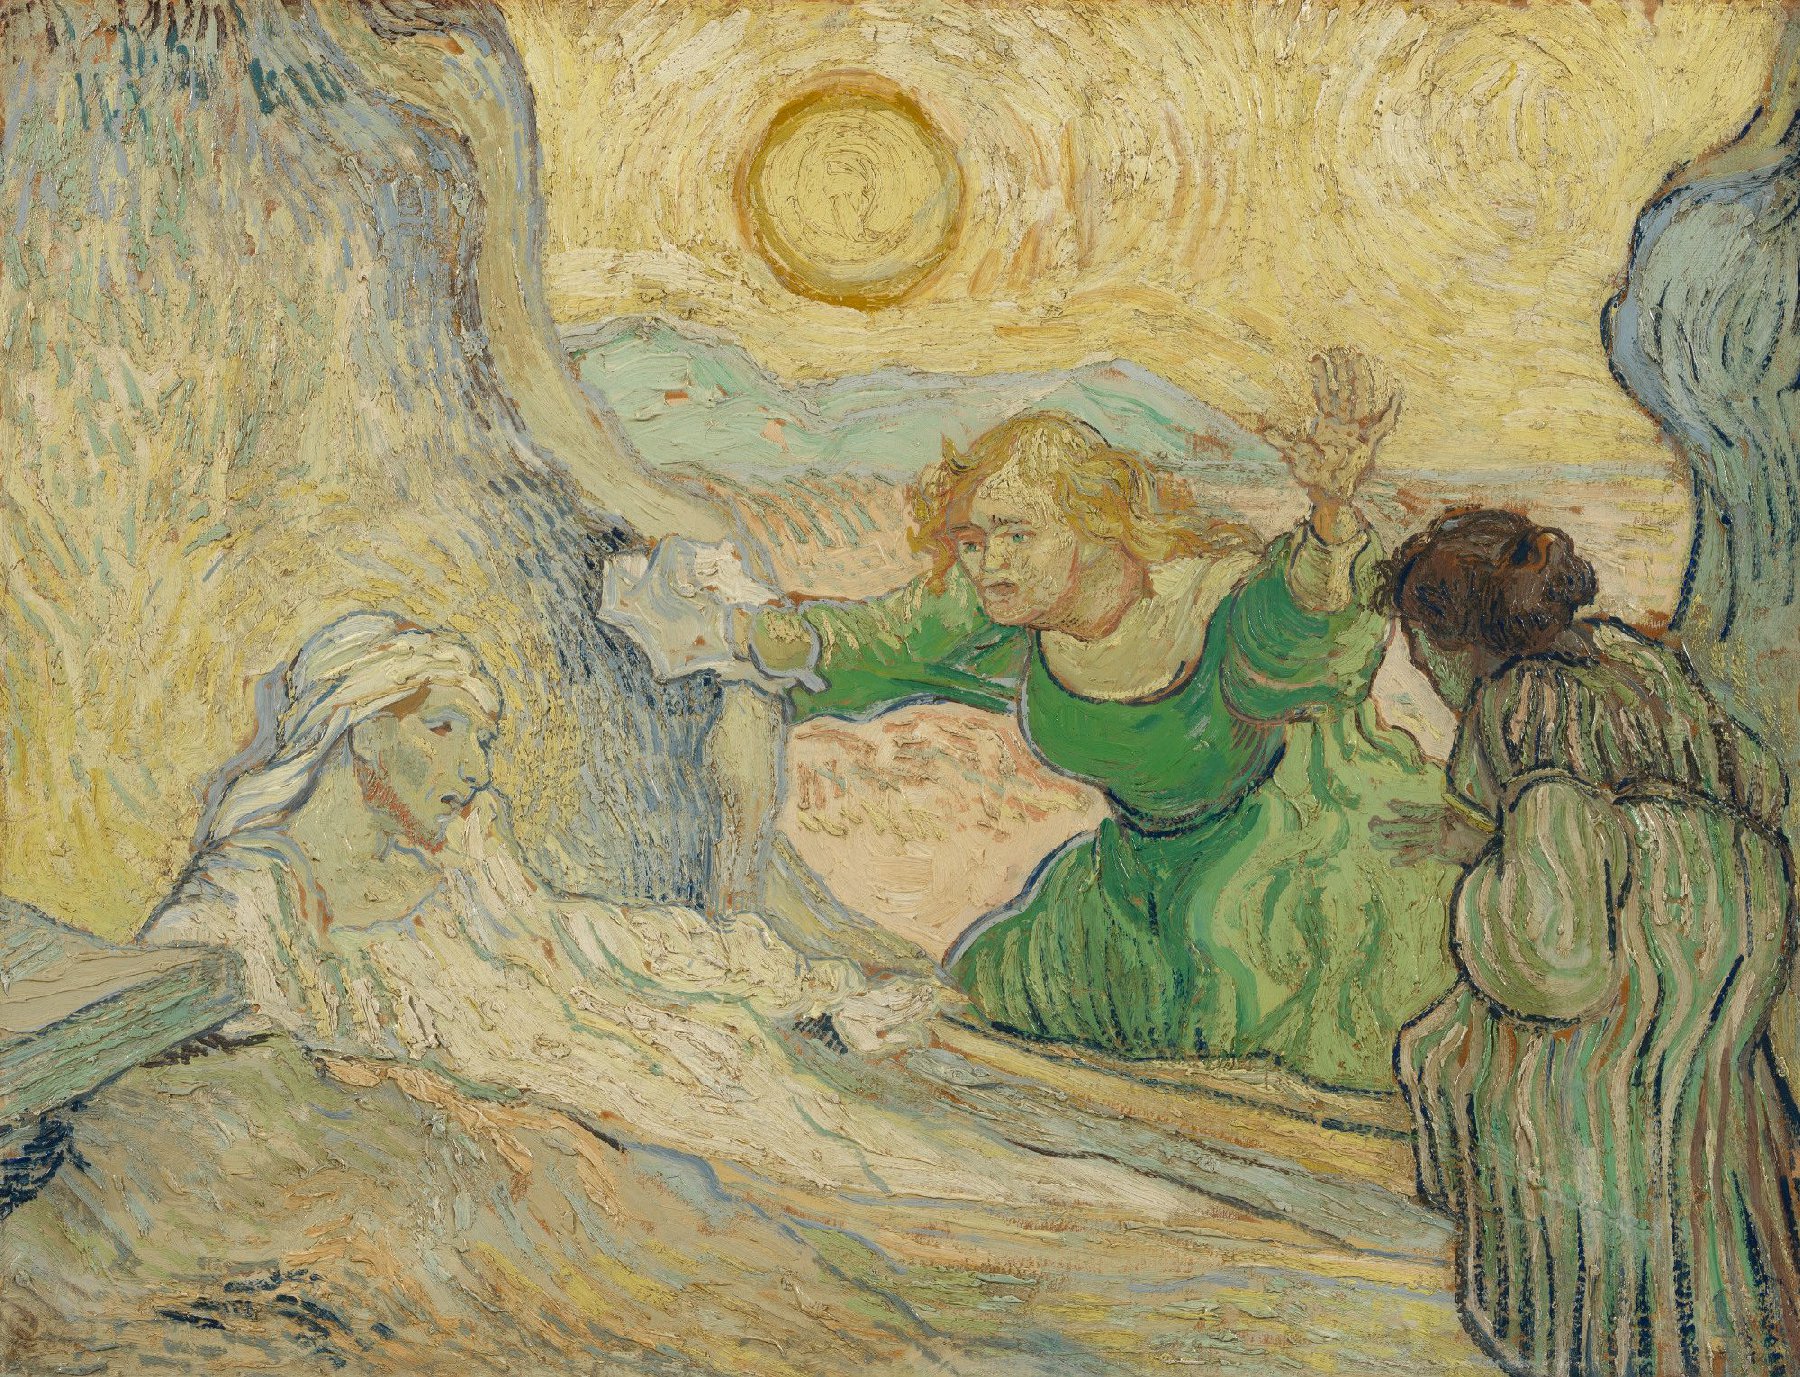 De opwekking van Lazarus (naar Rembrandt) Vincent van Gogh (1853 - 1890), Saint-Rémy-de-Provence, mei 1890